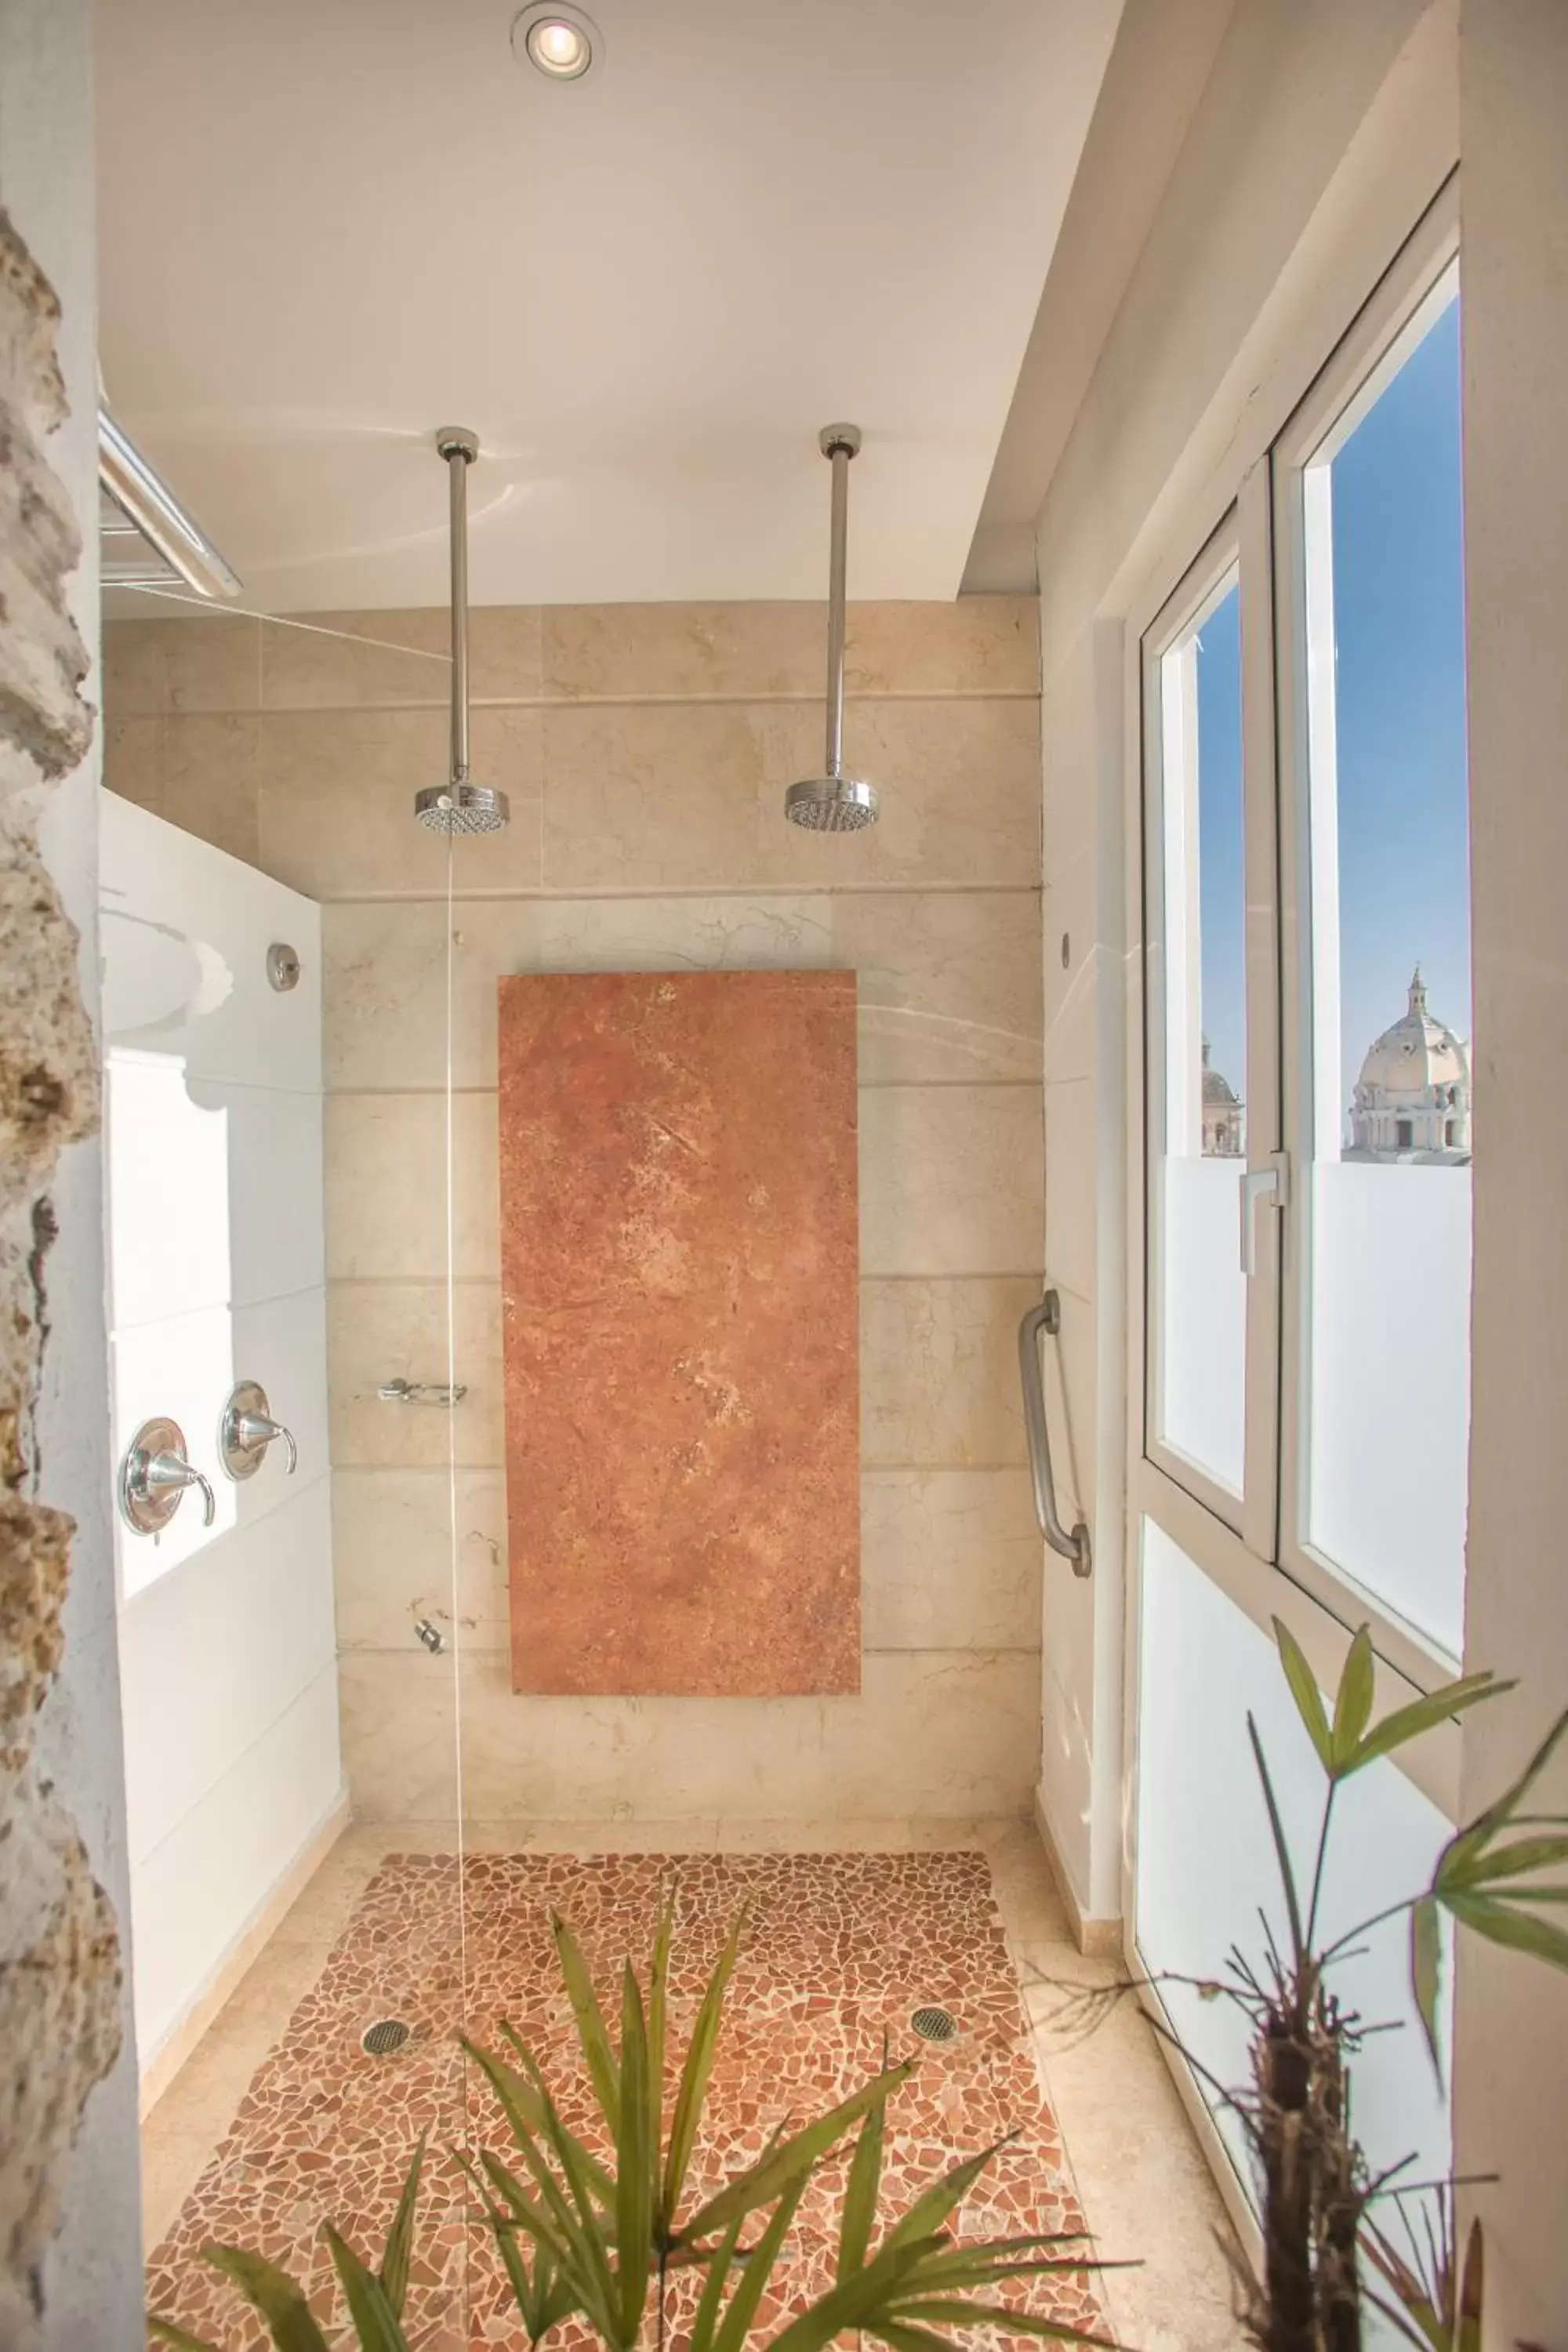 Photo of the whole room, Bathroom in Movich Hotel Cartagena de Indias